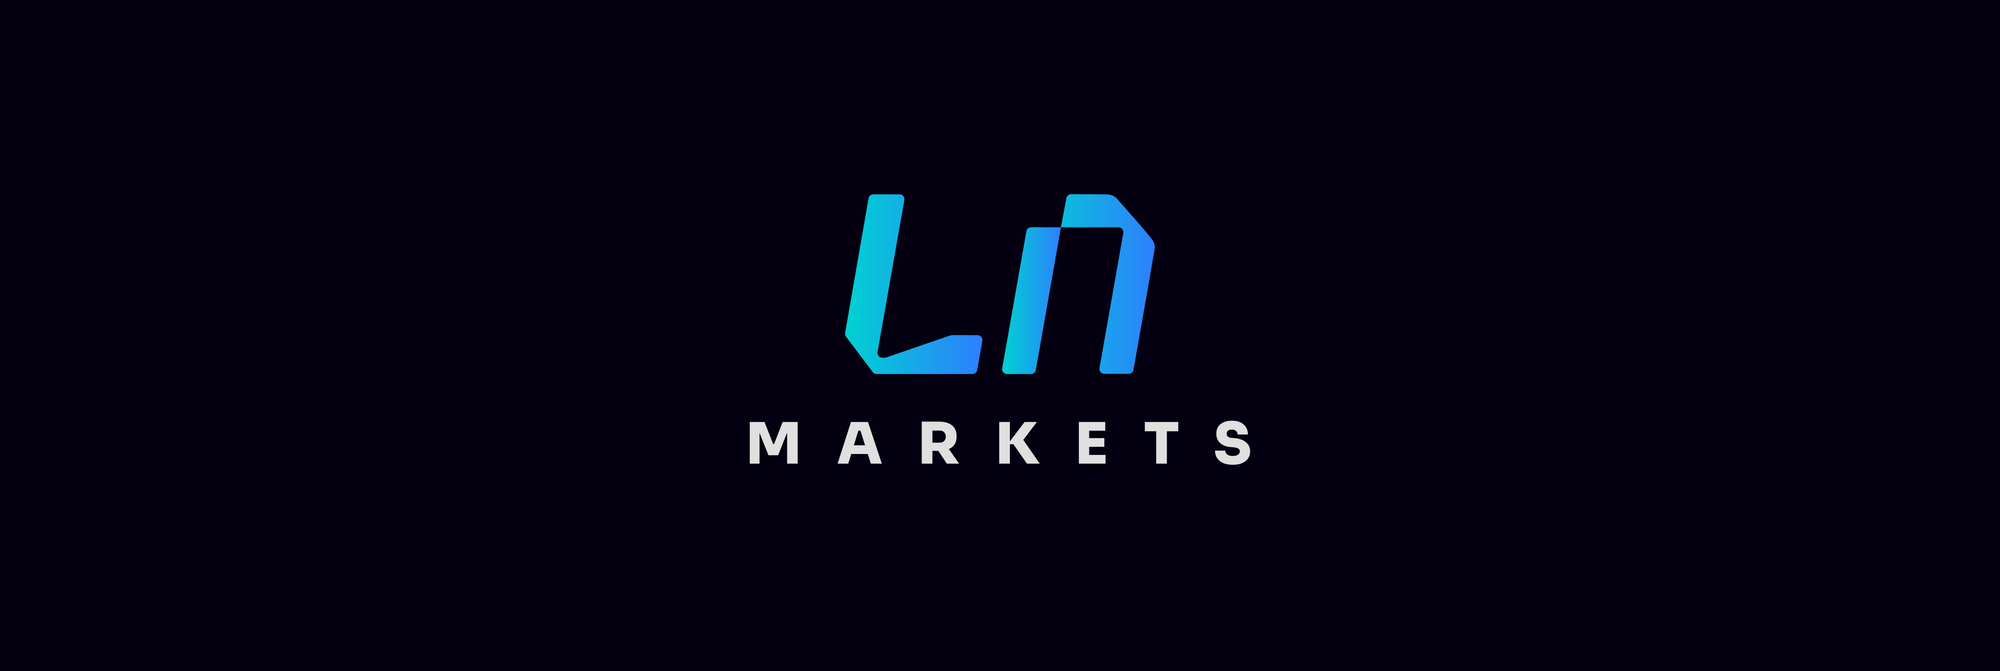 LN Markets Blog